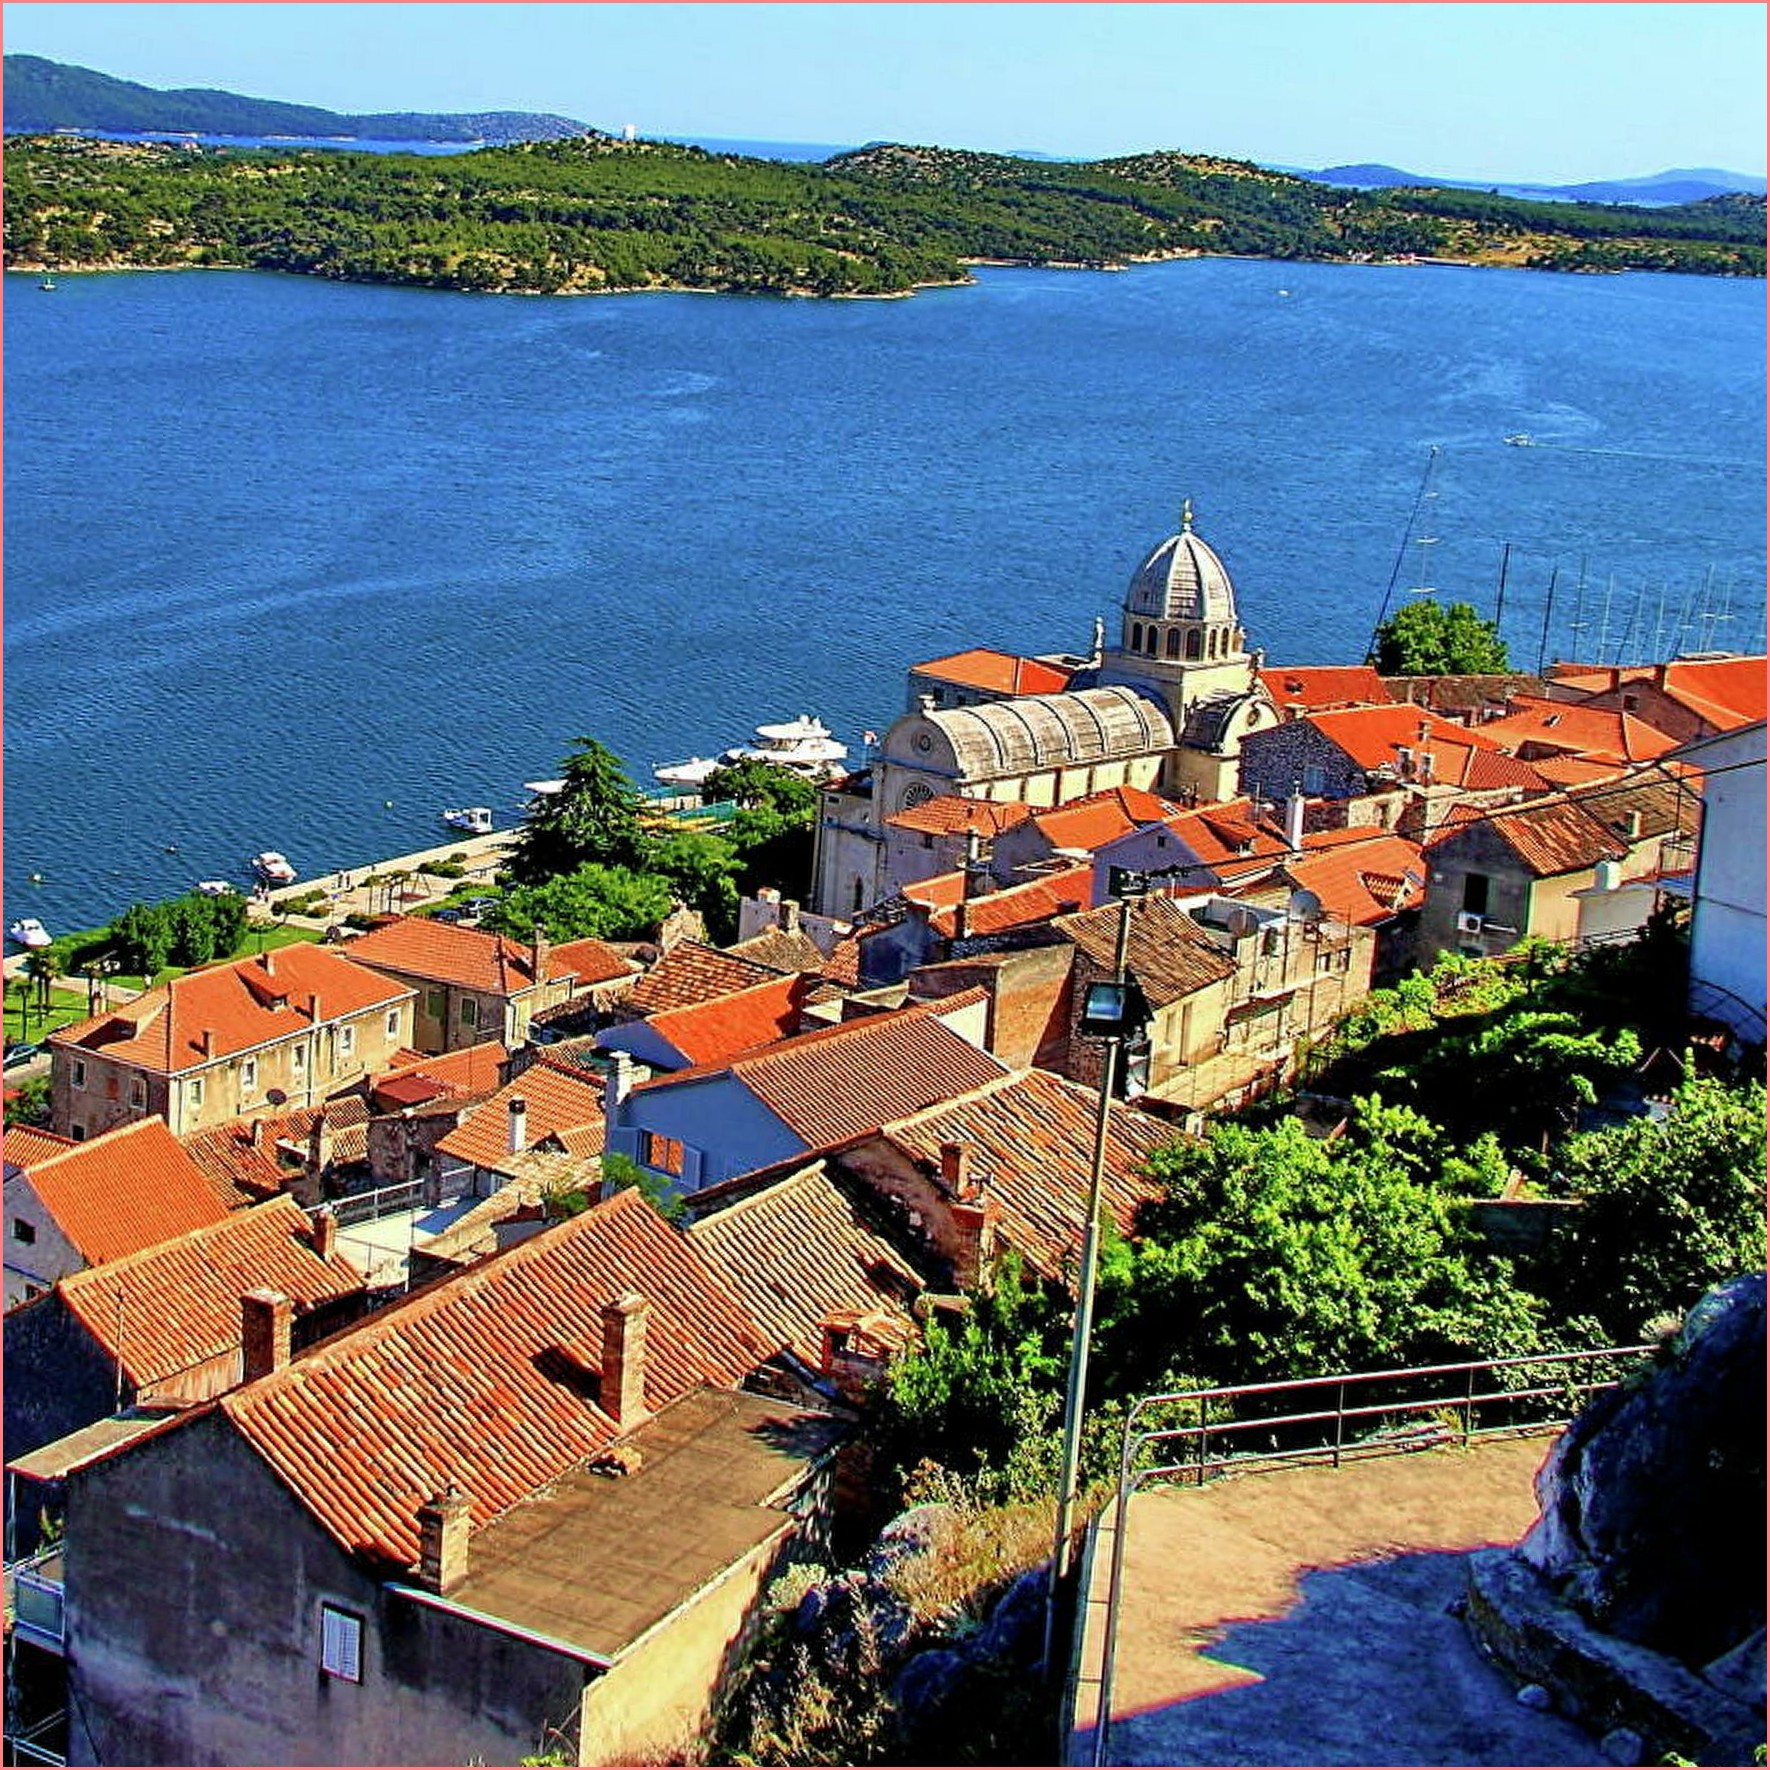 Пула в Хорватии - ваше туристическое направление на лето Самые важные достопримечательности Пулы        Достопримечательности